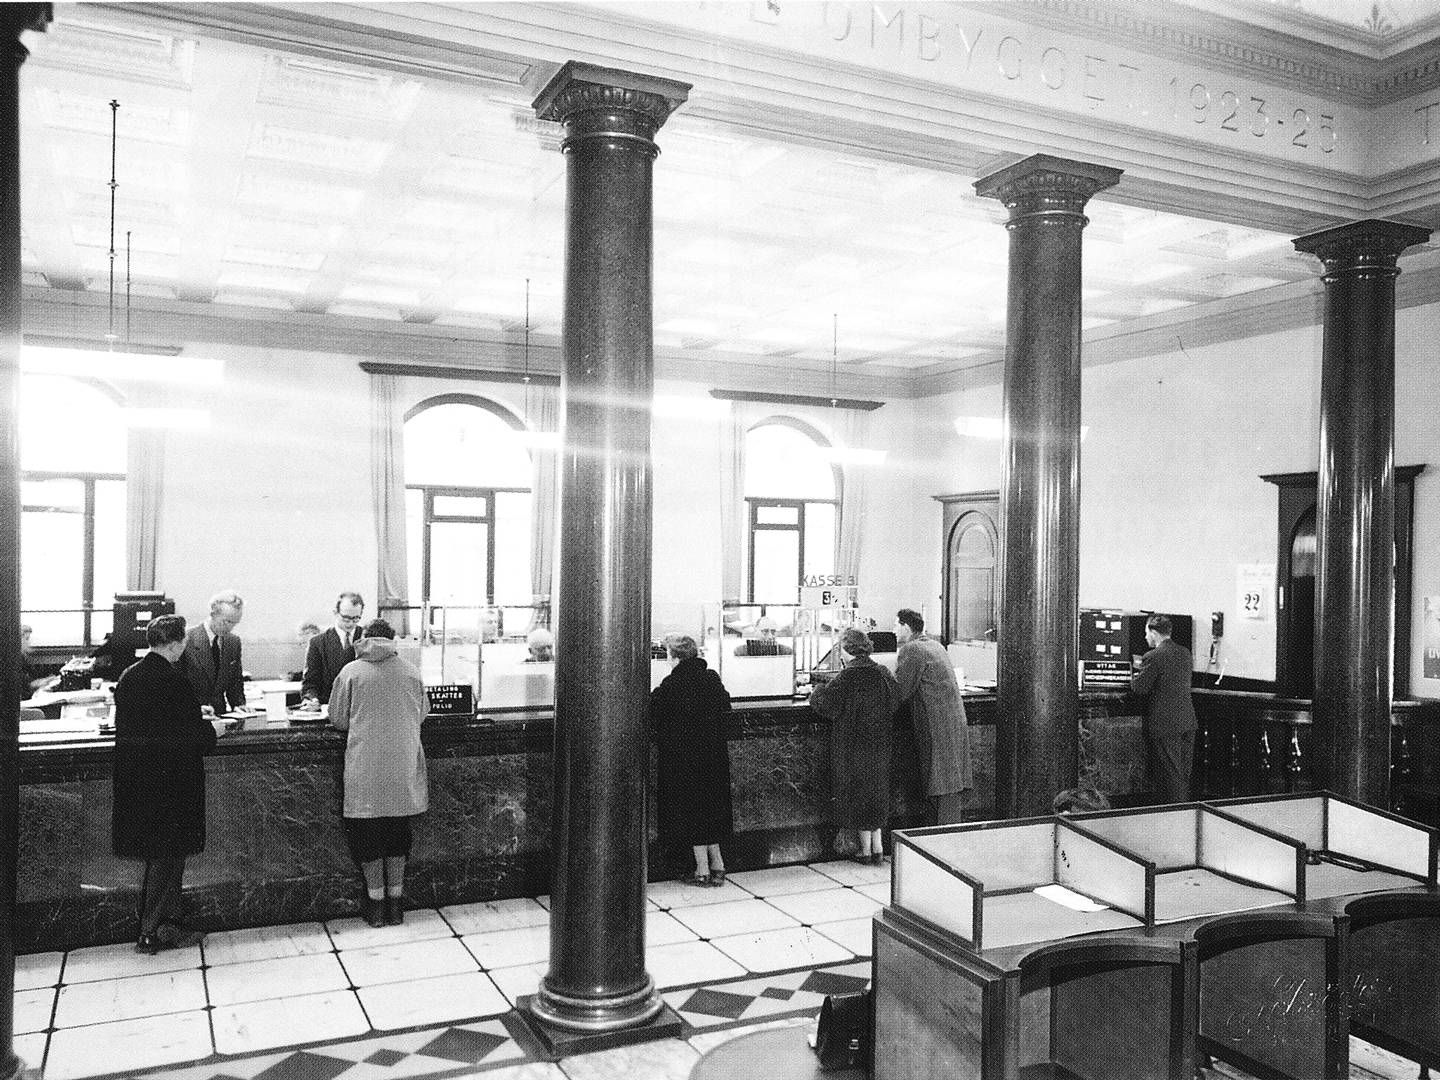 Slik så det ut når trondhjemmerne gikk i banken for å ta ut penger i 1956. | Photo: Sparebank 1 SMN